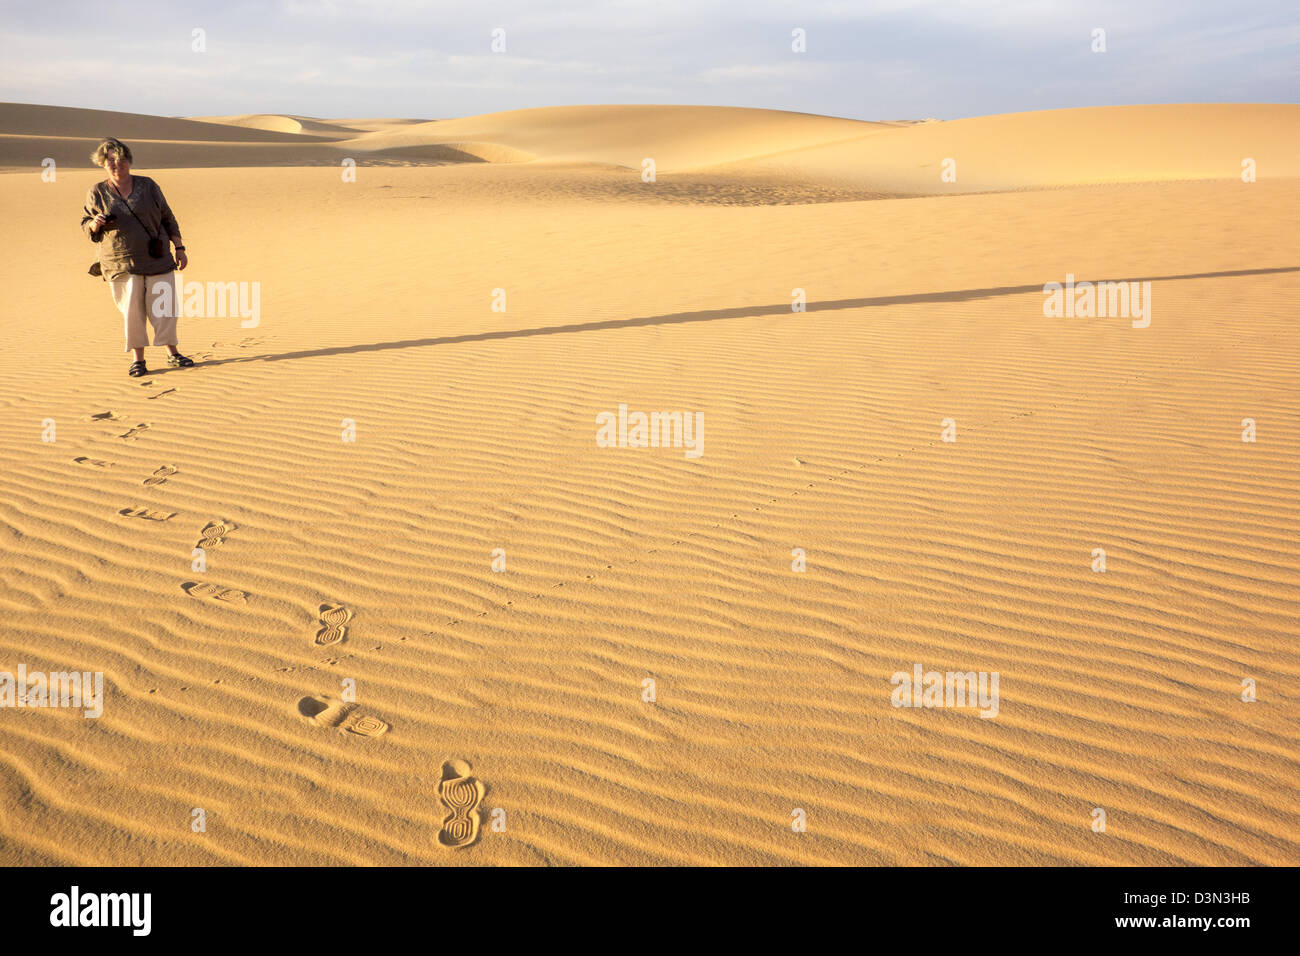 Dans les dunes de Barcan touristique près de Kharga dans le désert occidental de l'Égypte. Banque D'Images